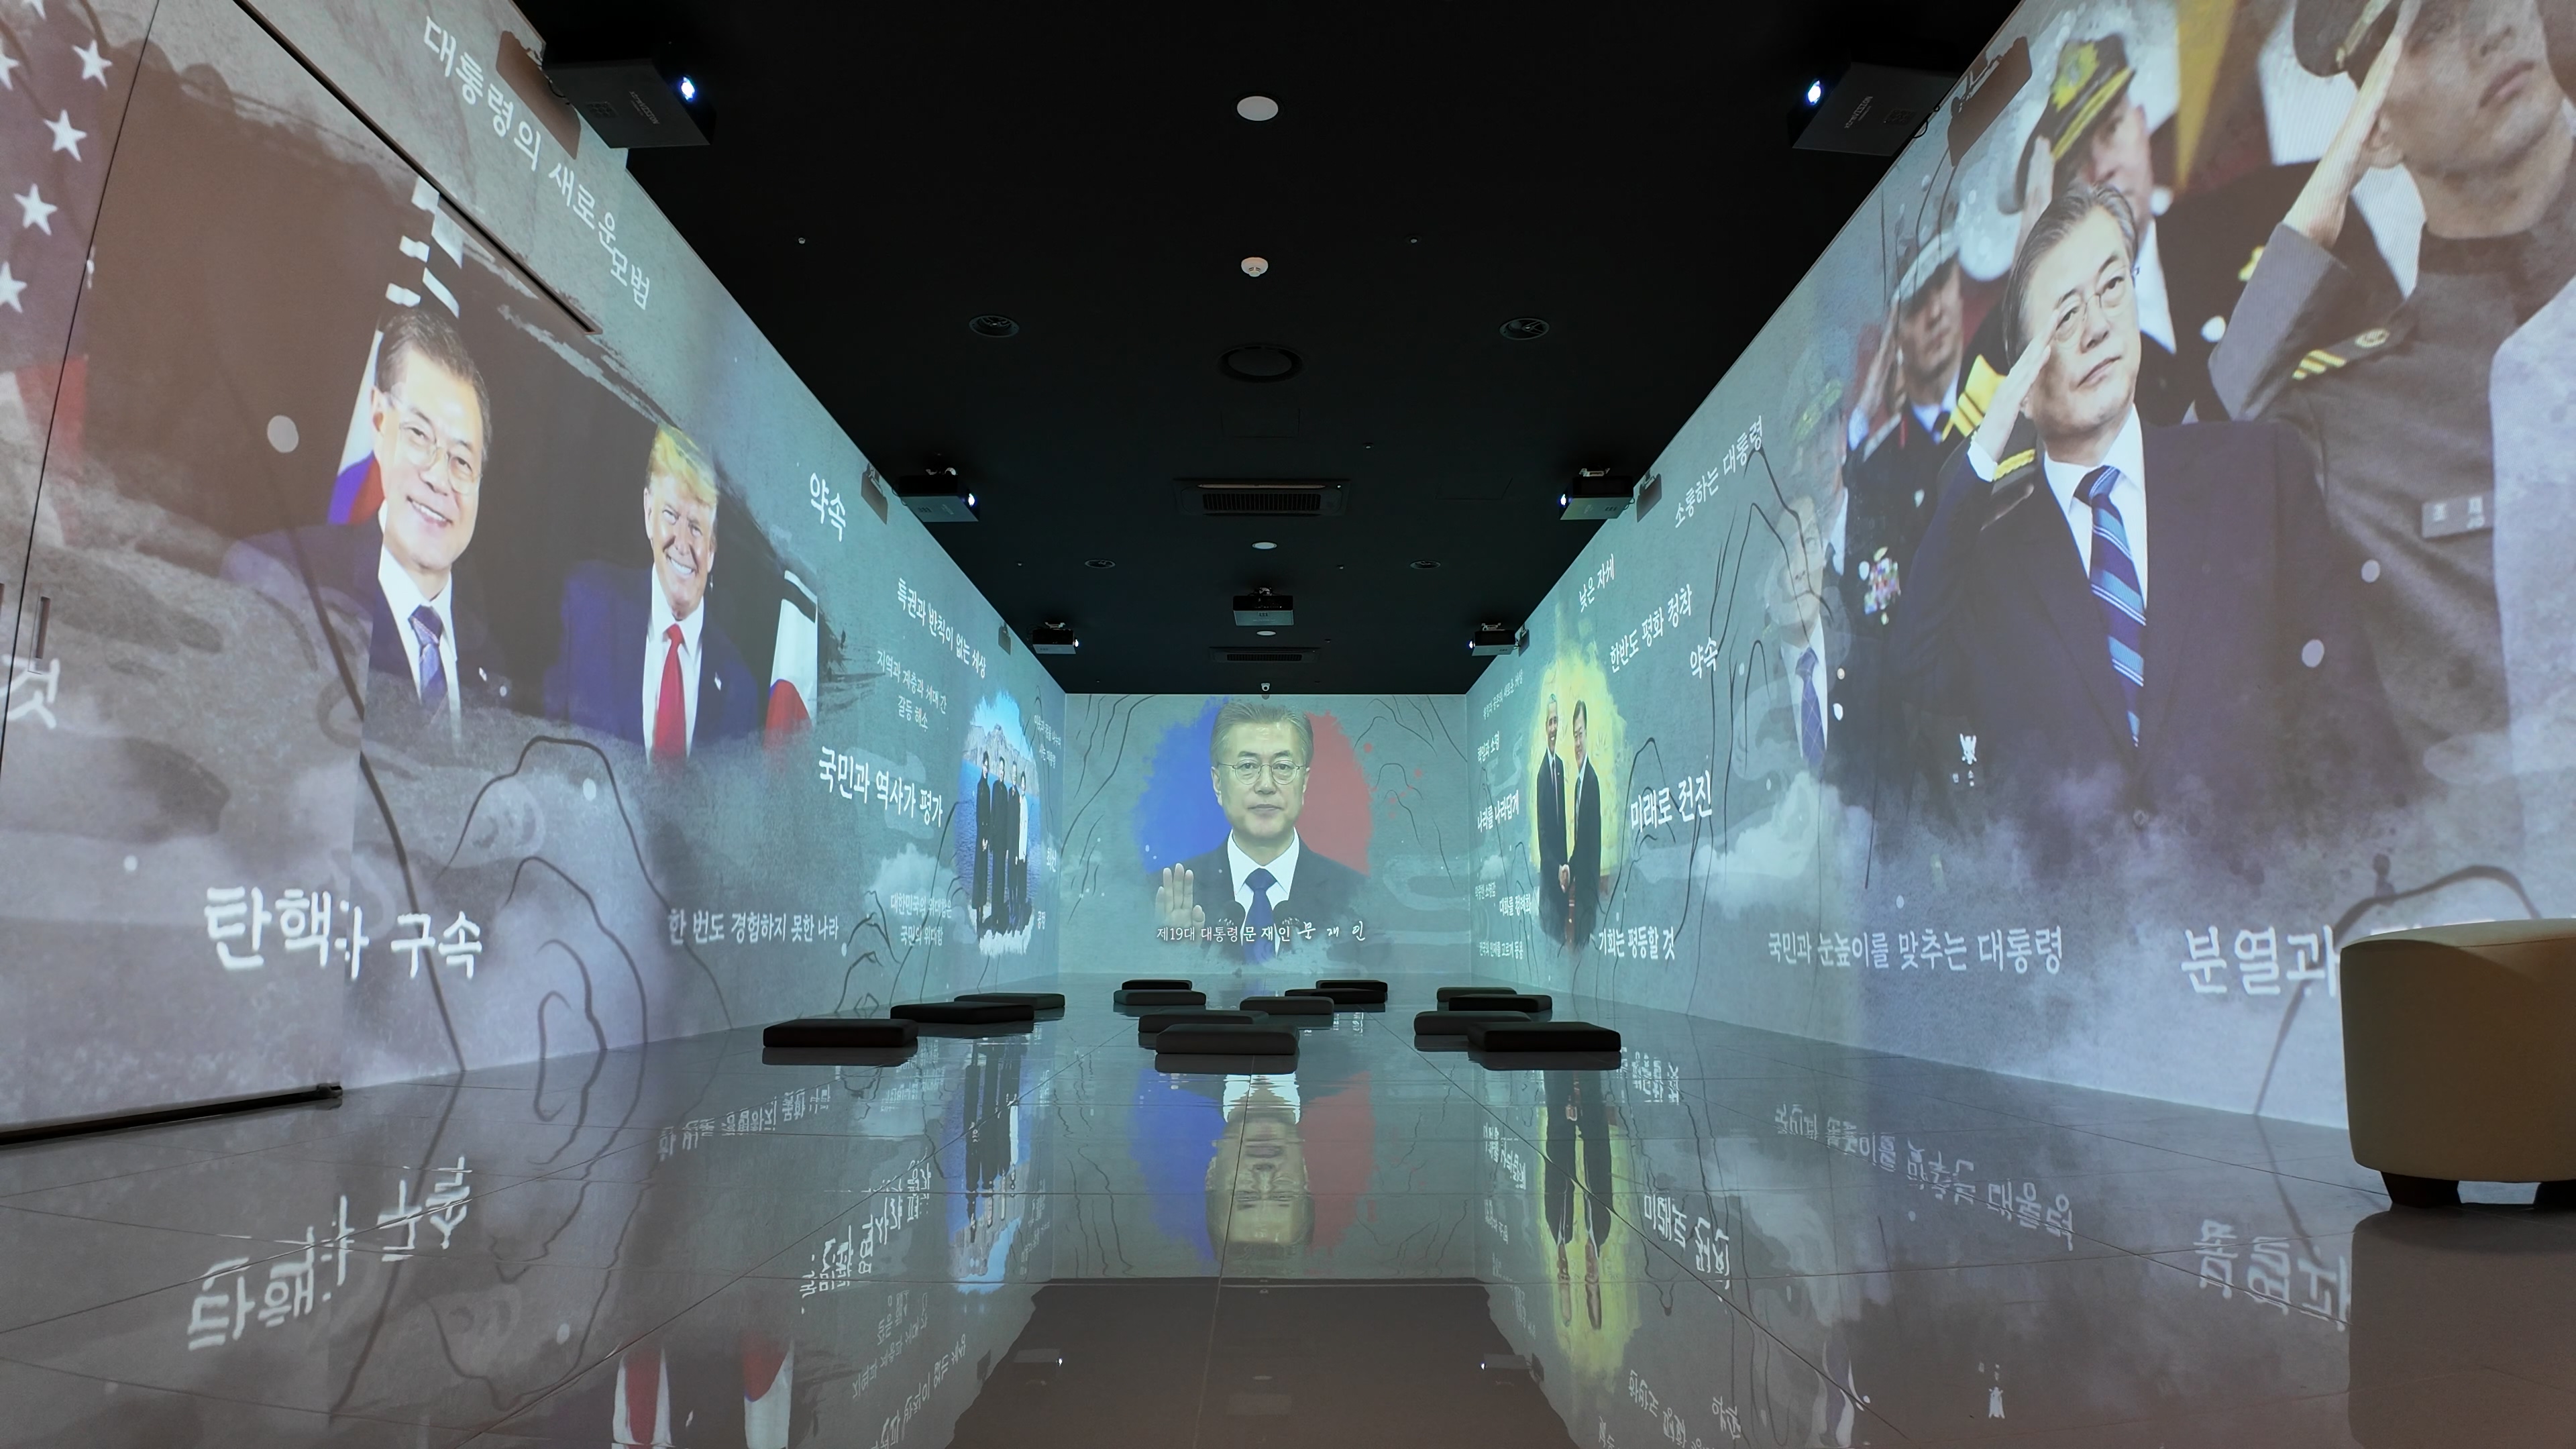 1부 '청와대와 함께한 대통령들'은 초대 대통령부터 제19대 대통령의 취임식과 핵심 키워드를 모션그래픽으로 보여주고 있다.